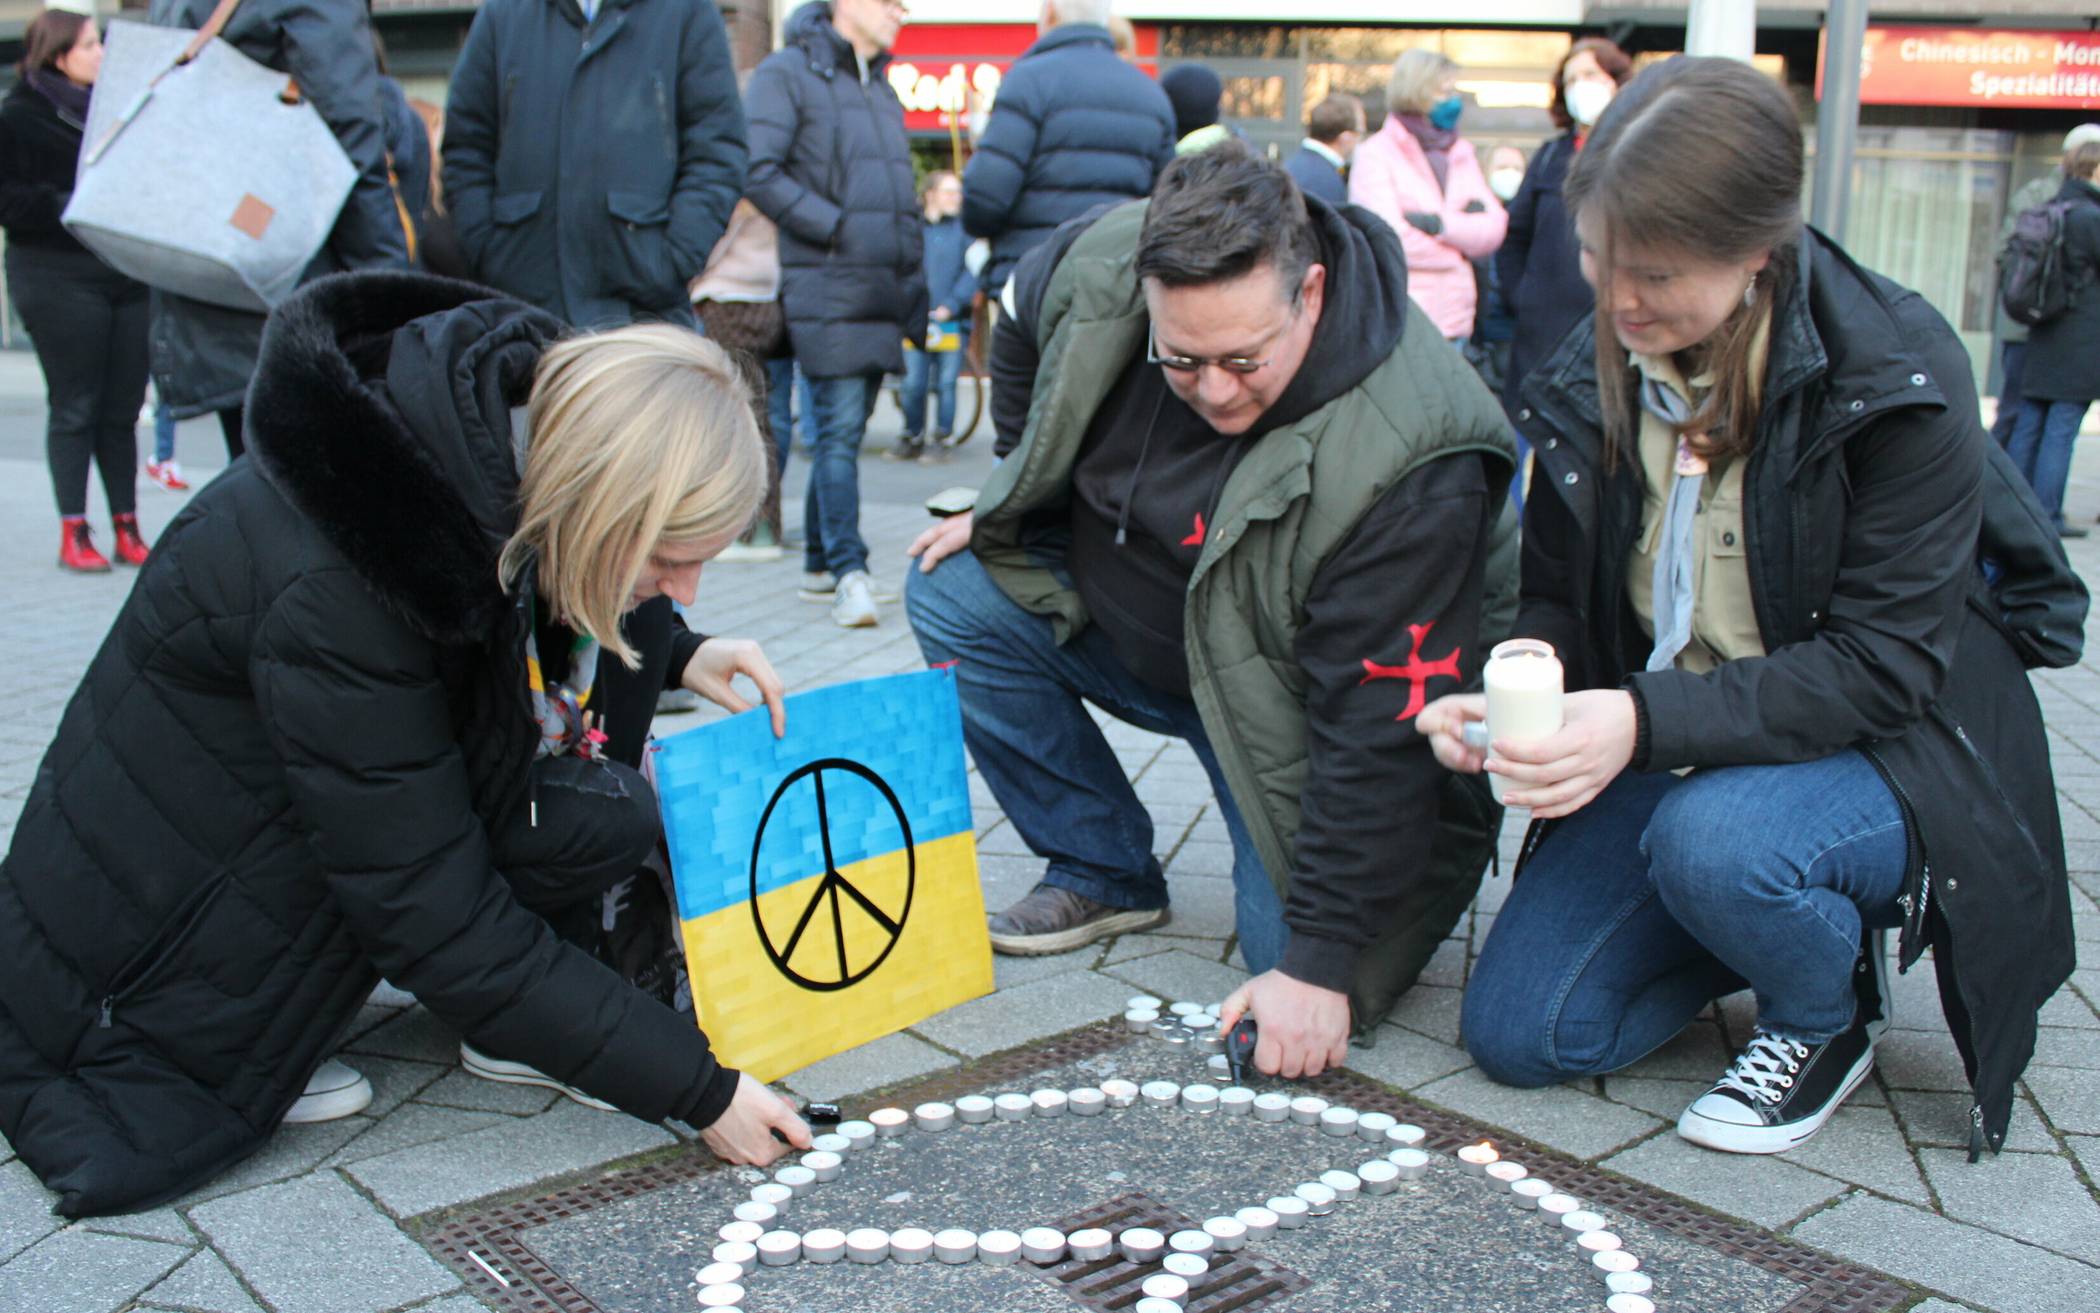  Organisator Jörg Pieczewsky und zwei Teilnehmerinnen der Mahnwache entzünden ein aus Teelichtern gebildetes Friedenszeichen. 
  